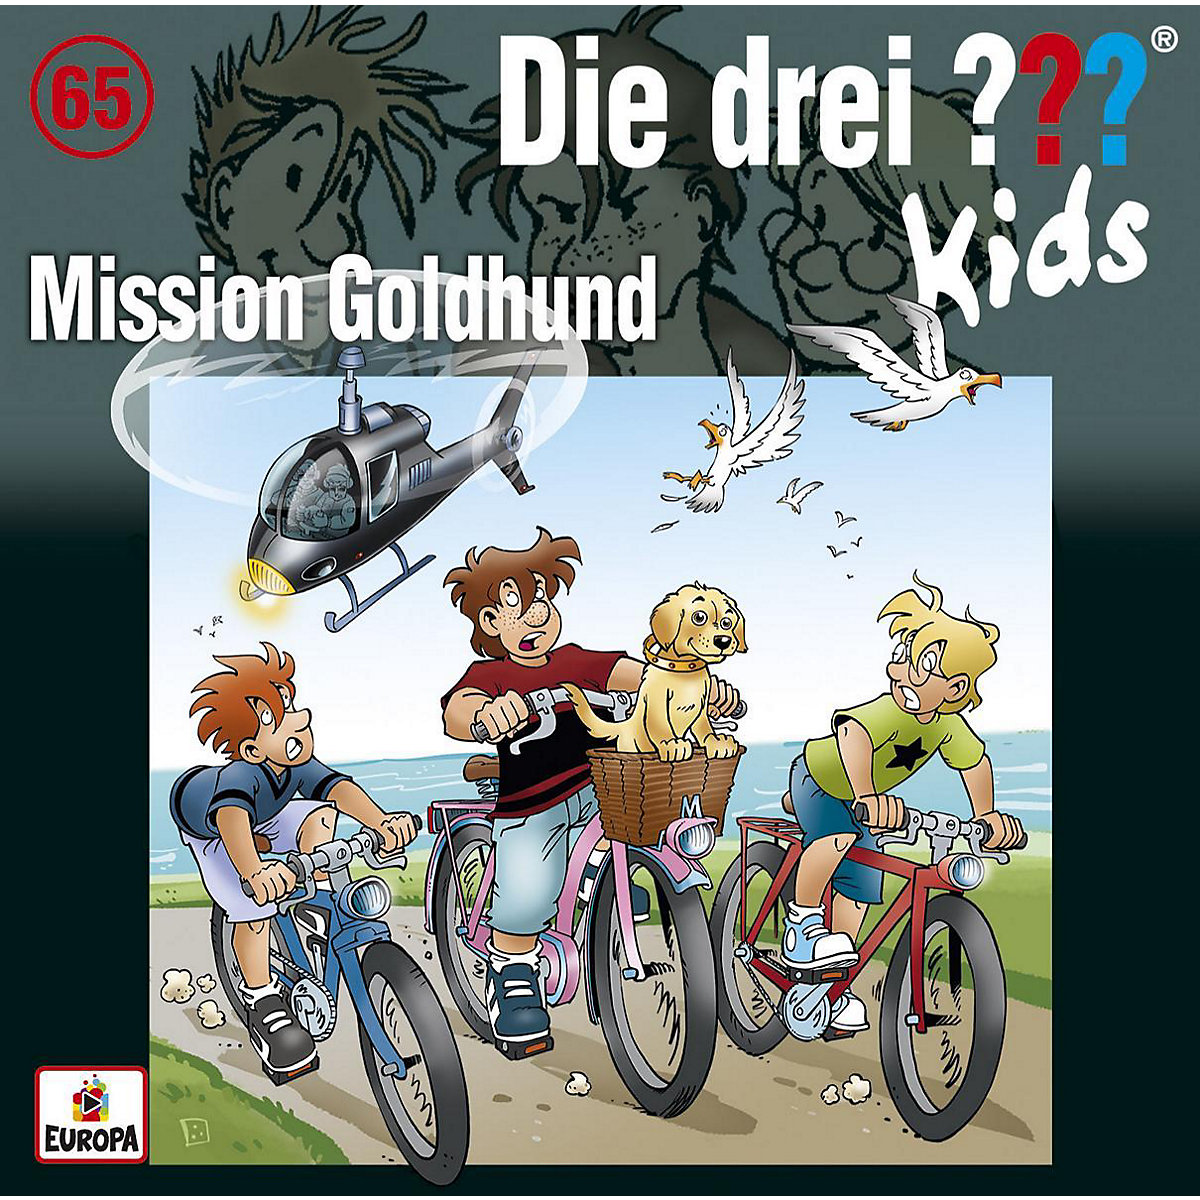 CD Die drei ??? Kids 65 Mission Goldhund